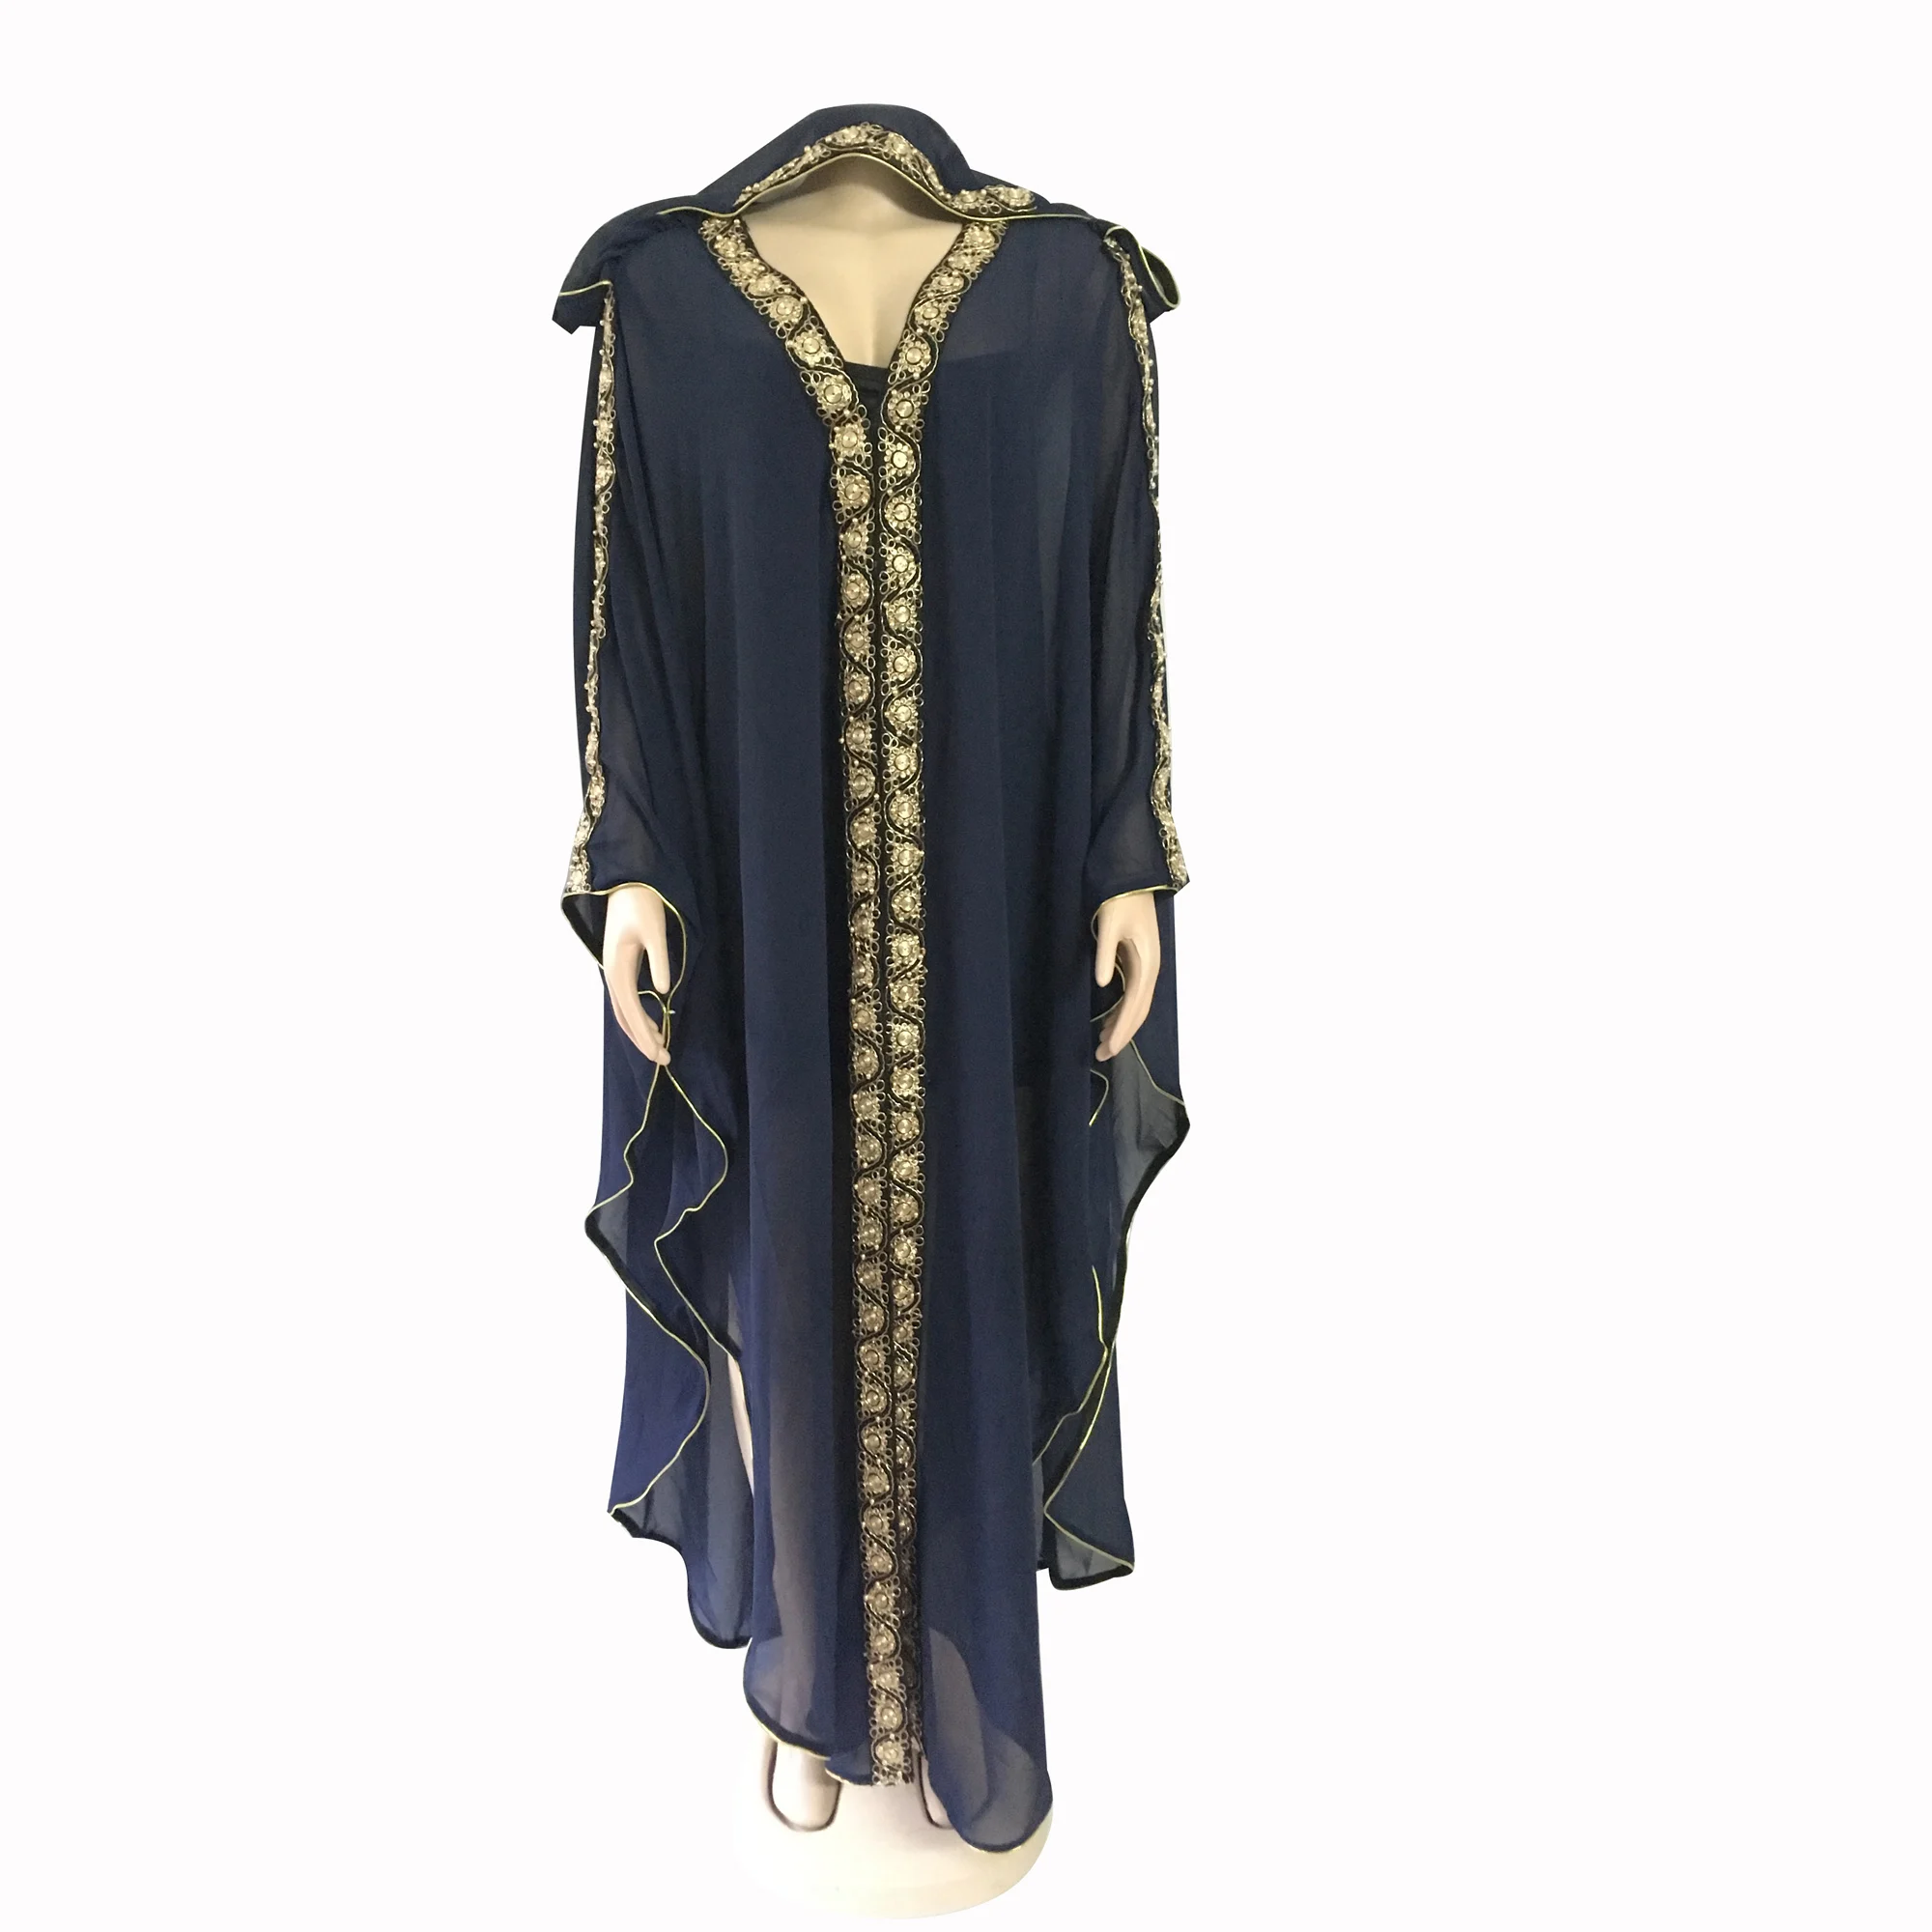 Tilapia горячая Распродажа летнее шифоновое платье с капюшоном размера плюс, черное платье с разрезом, эластичная внутренняя одежда